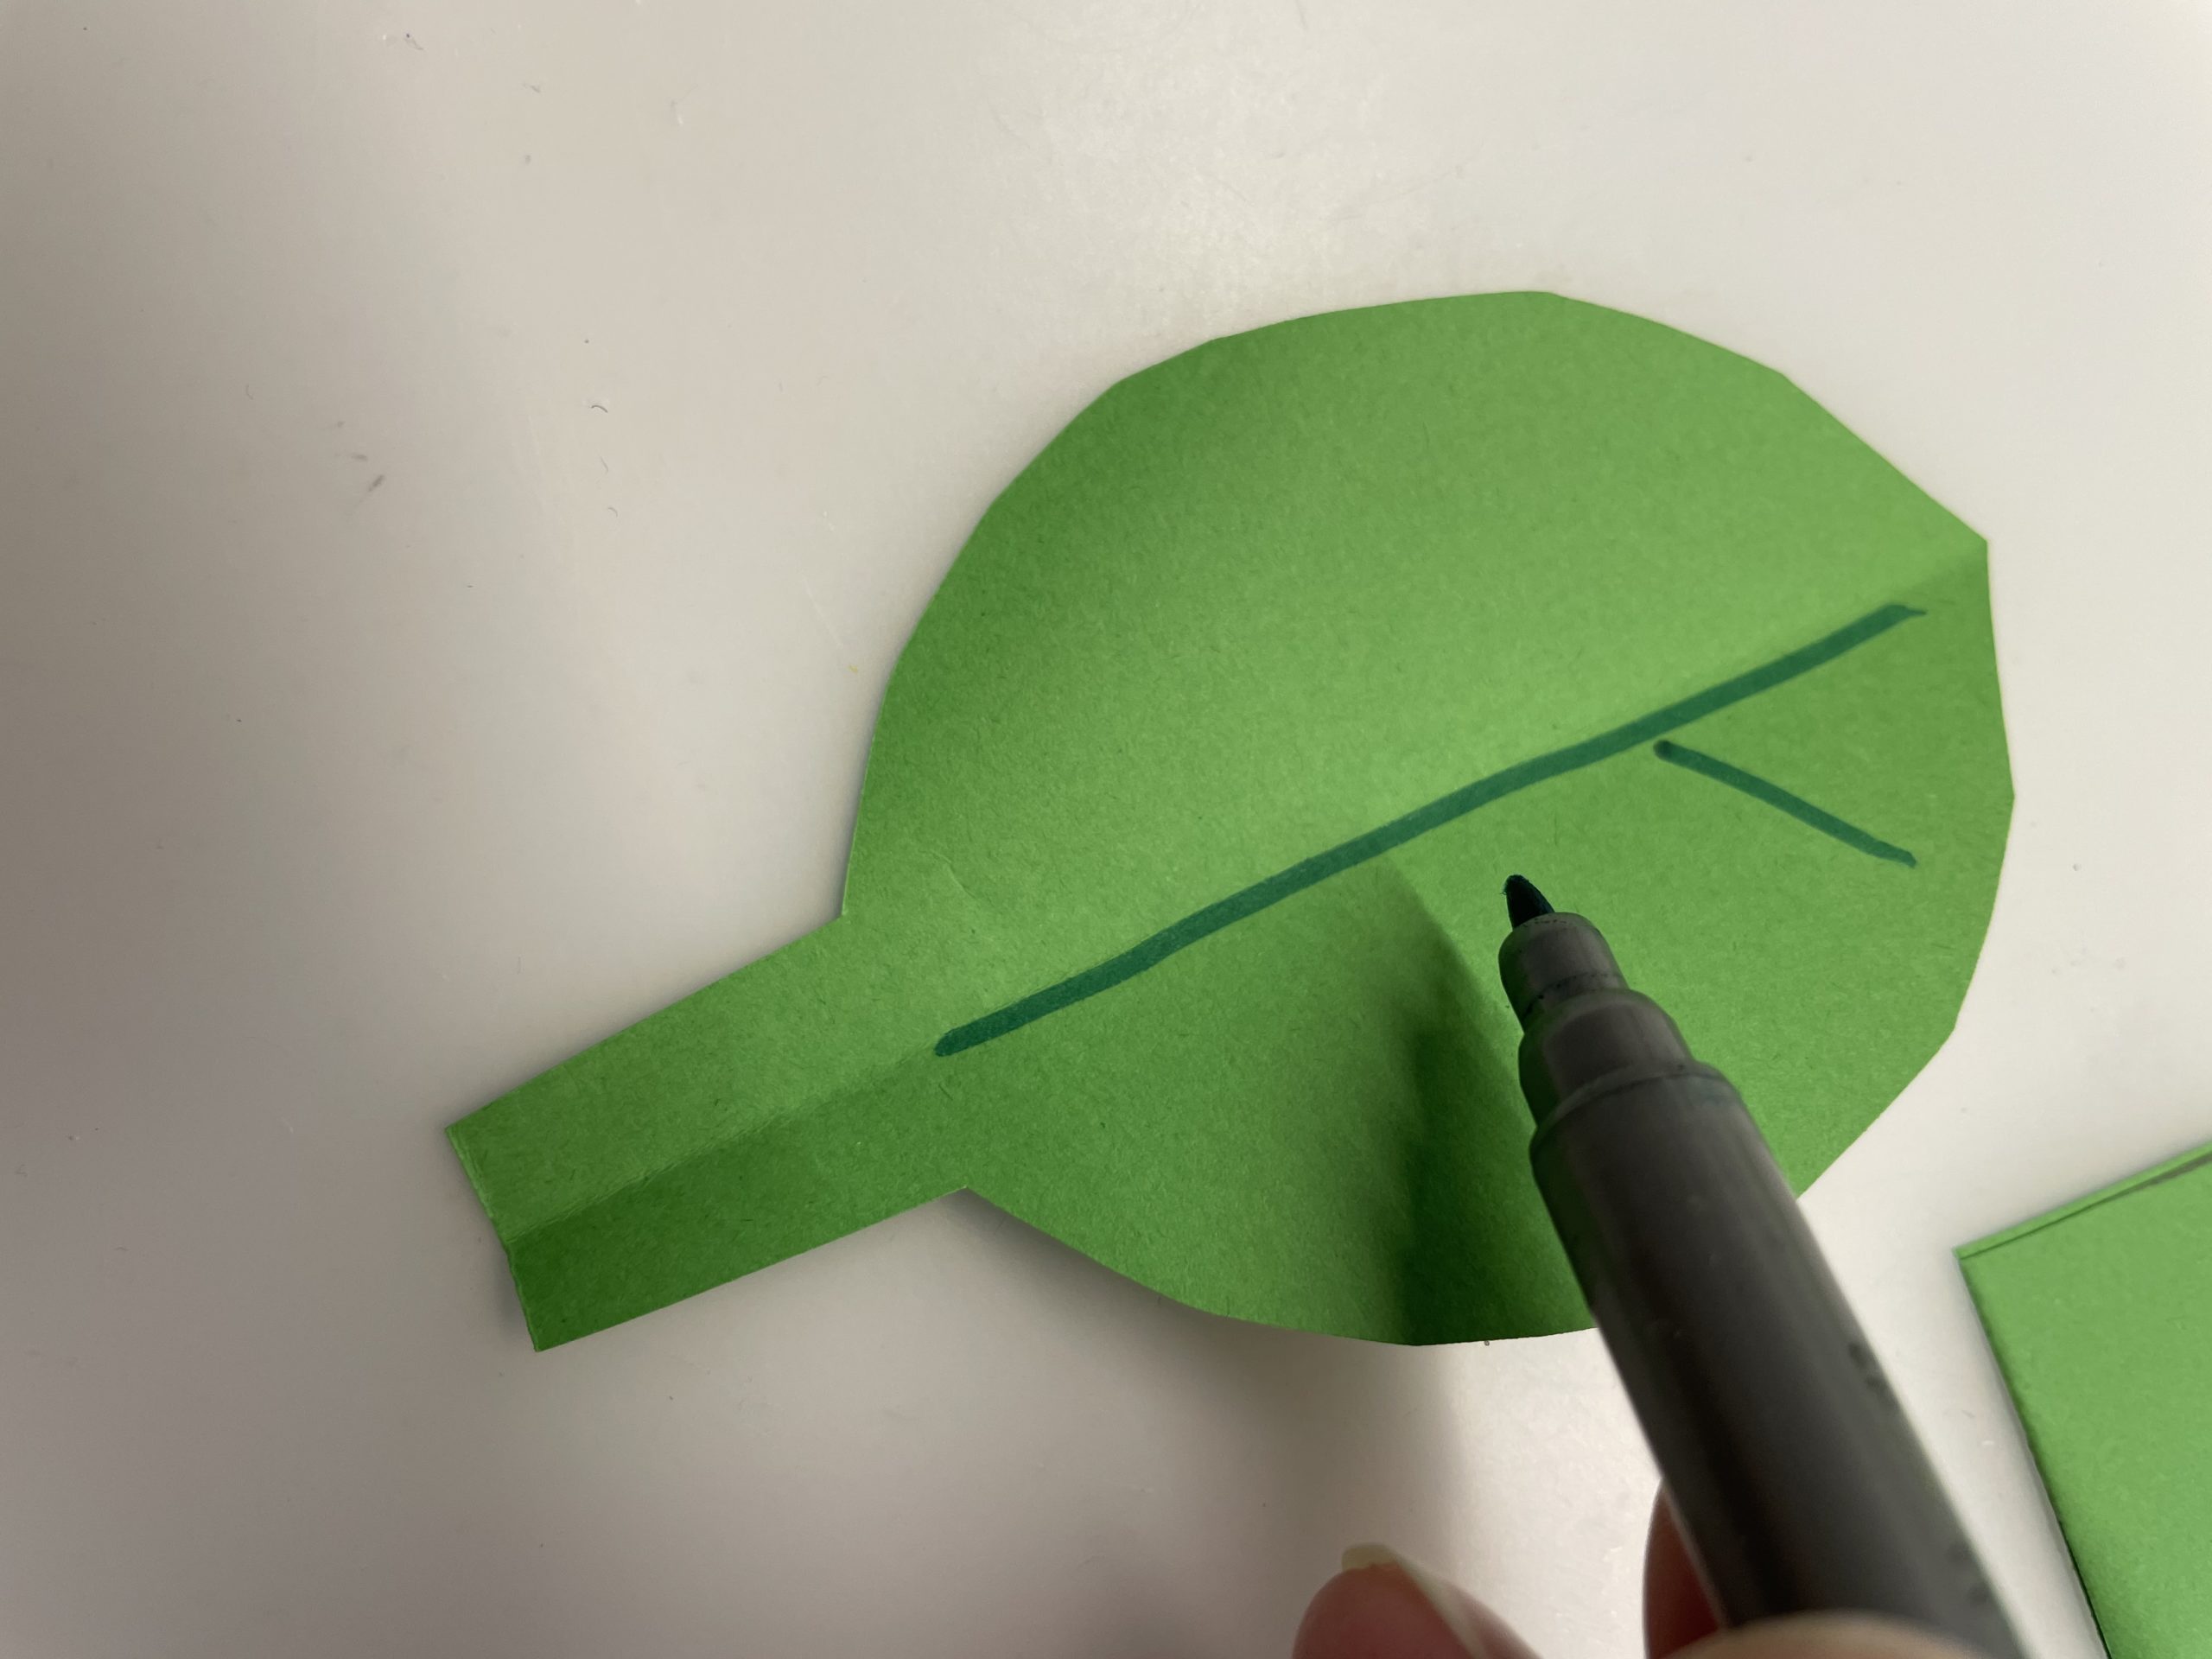 Bild zum Schritt 33 für das Bastel- und DIY-Abenteuer für Kinder: 'Jetzt malt ihr mit grünem Filzstift die Adern auf das...'